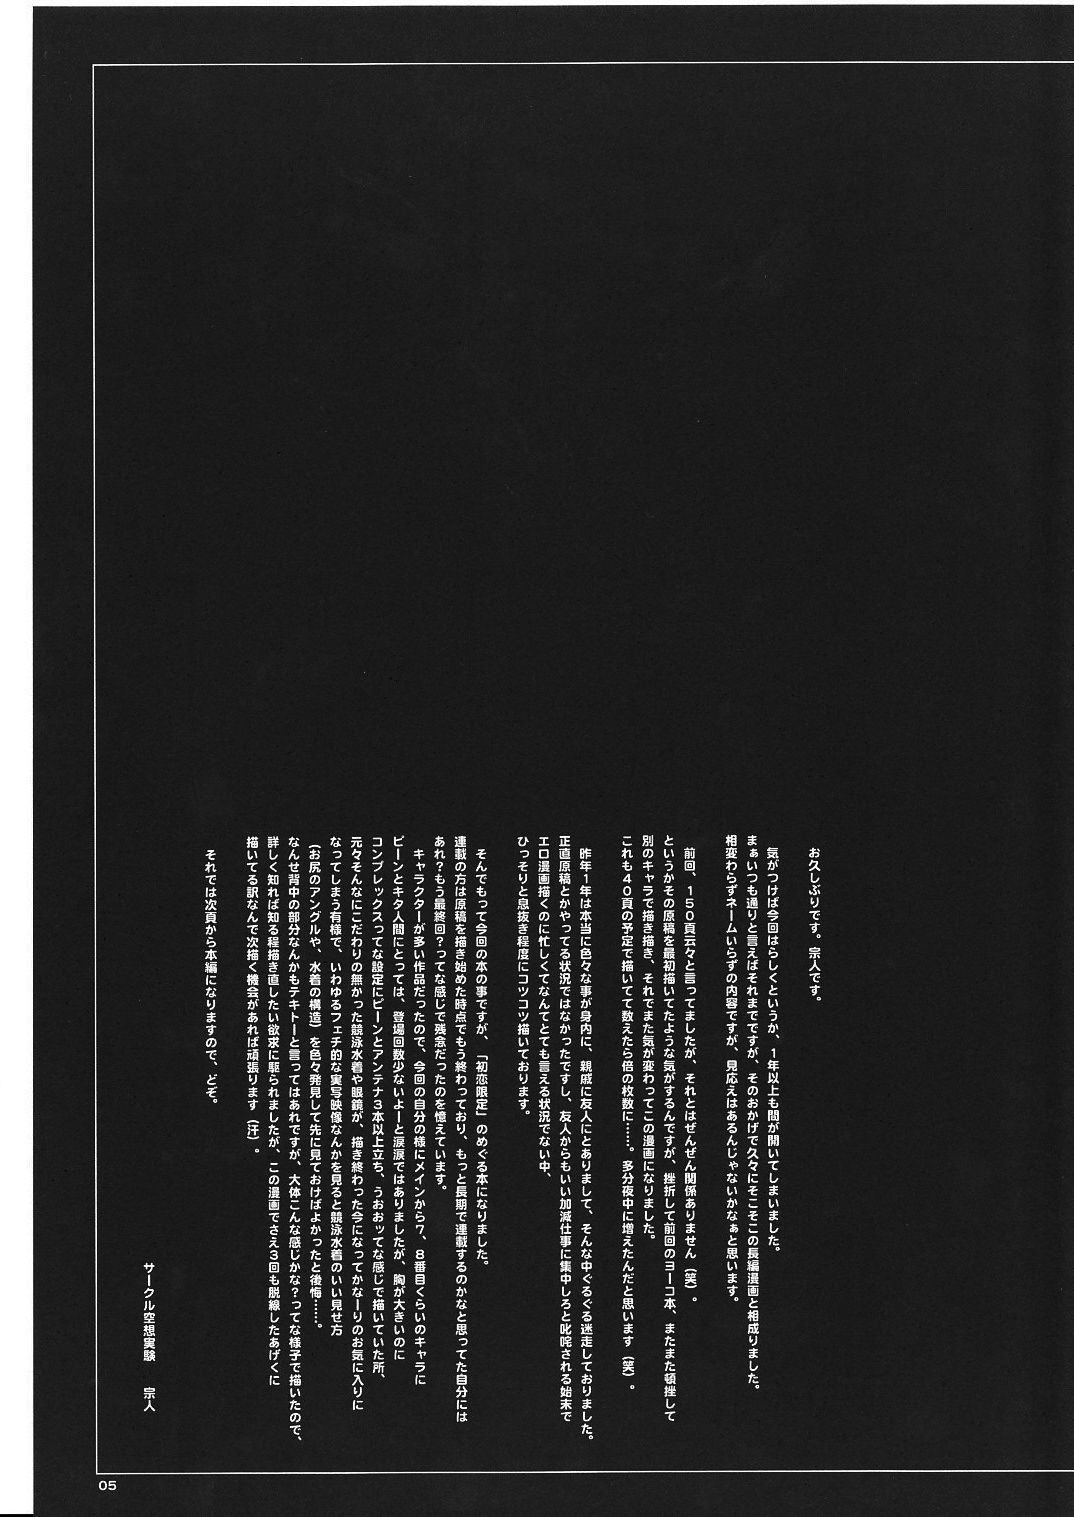 [サークル空想実験 (宗人)] 空想実験Vol.8 -初恋限定- (初恋限定。)